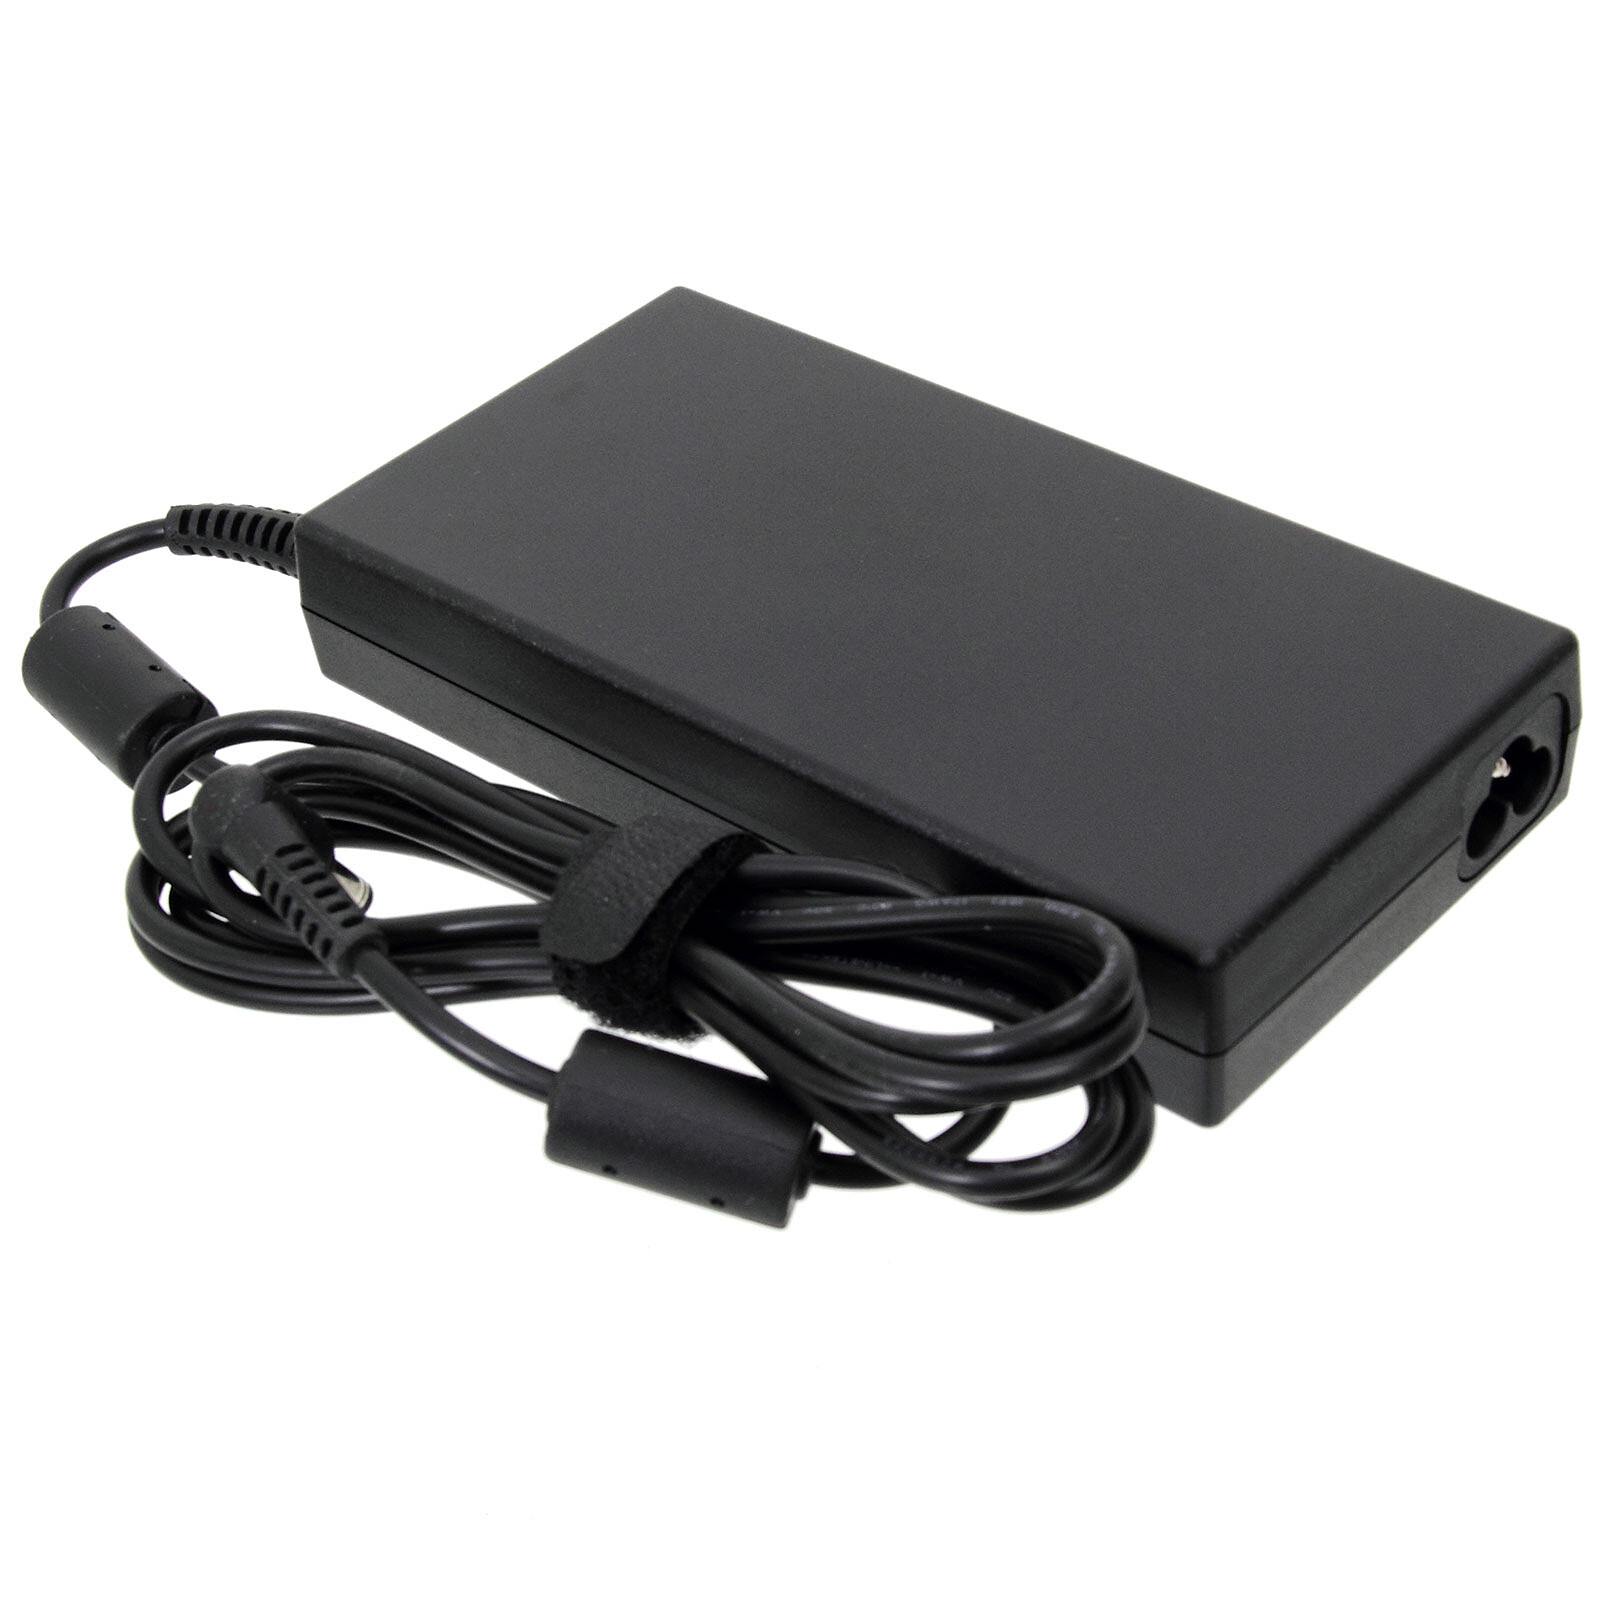 Bluestork Chargeur USB-C 65W GaN - Chargeur PC portable - Garantie 3 ans  LDLC